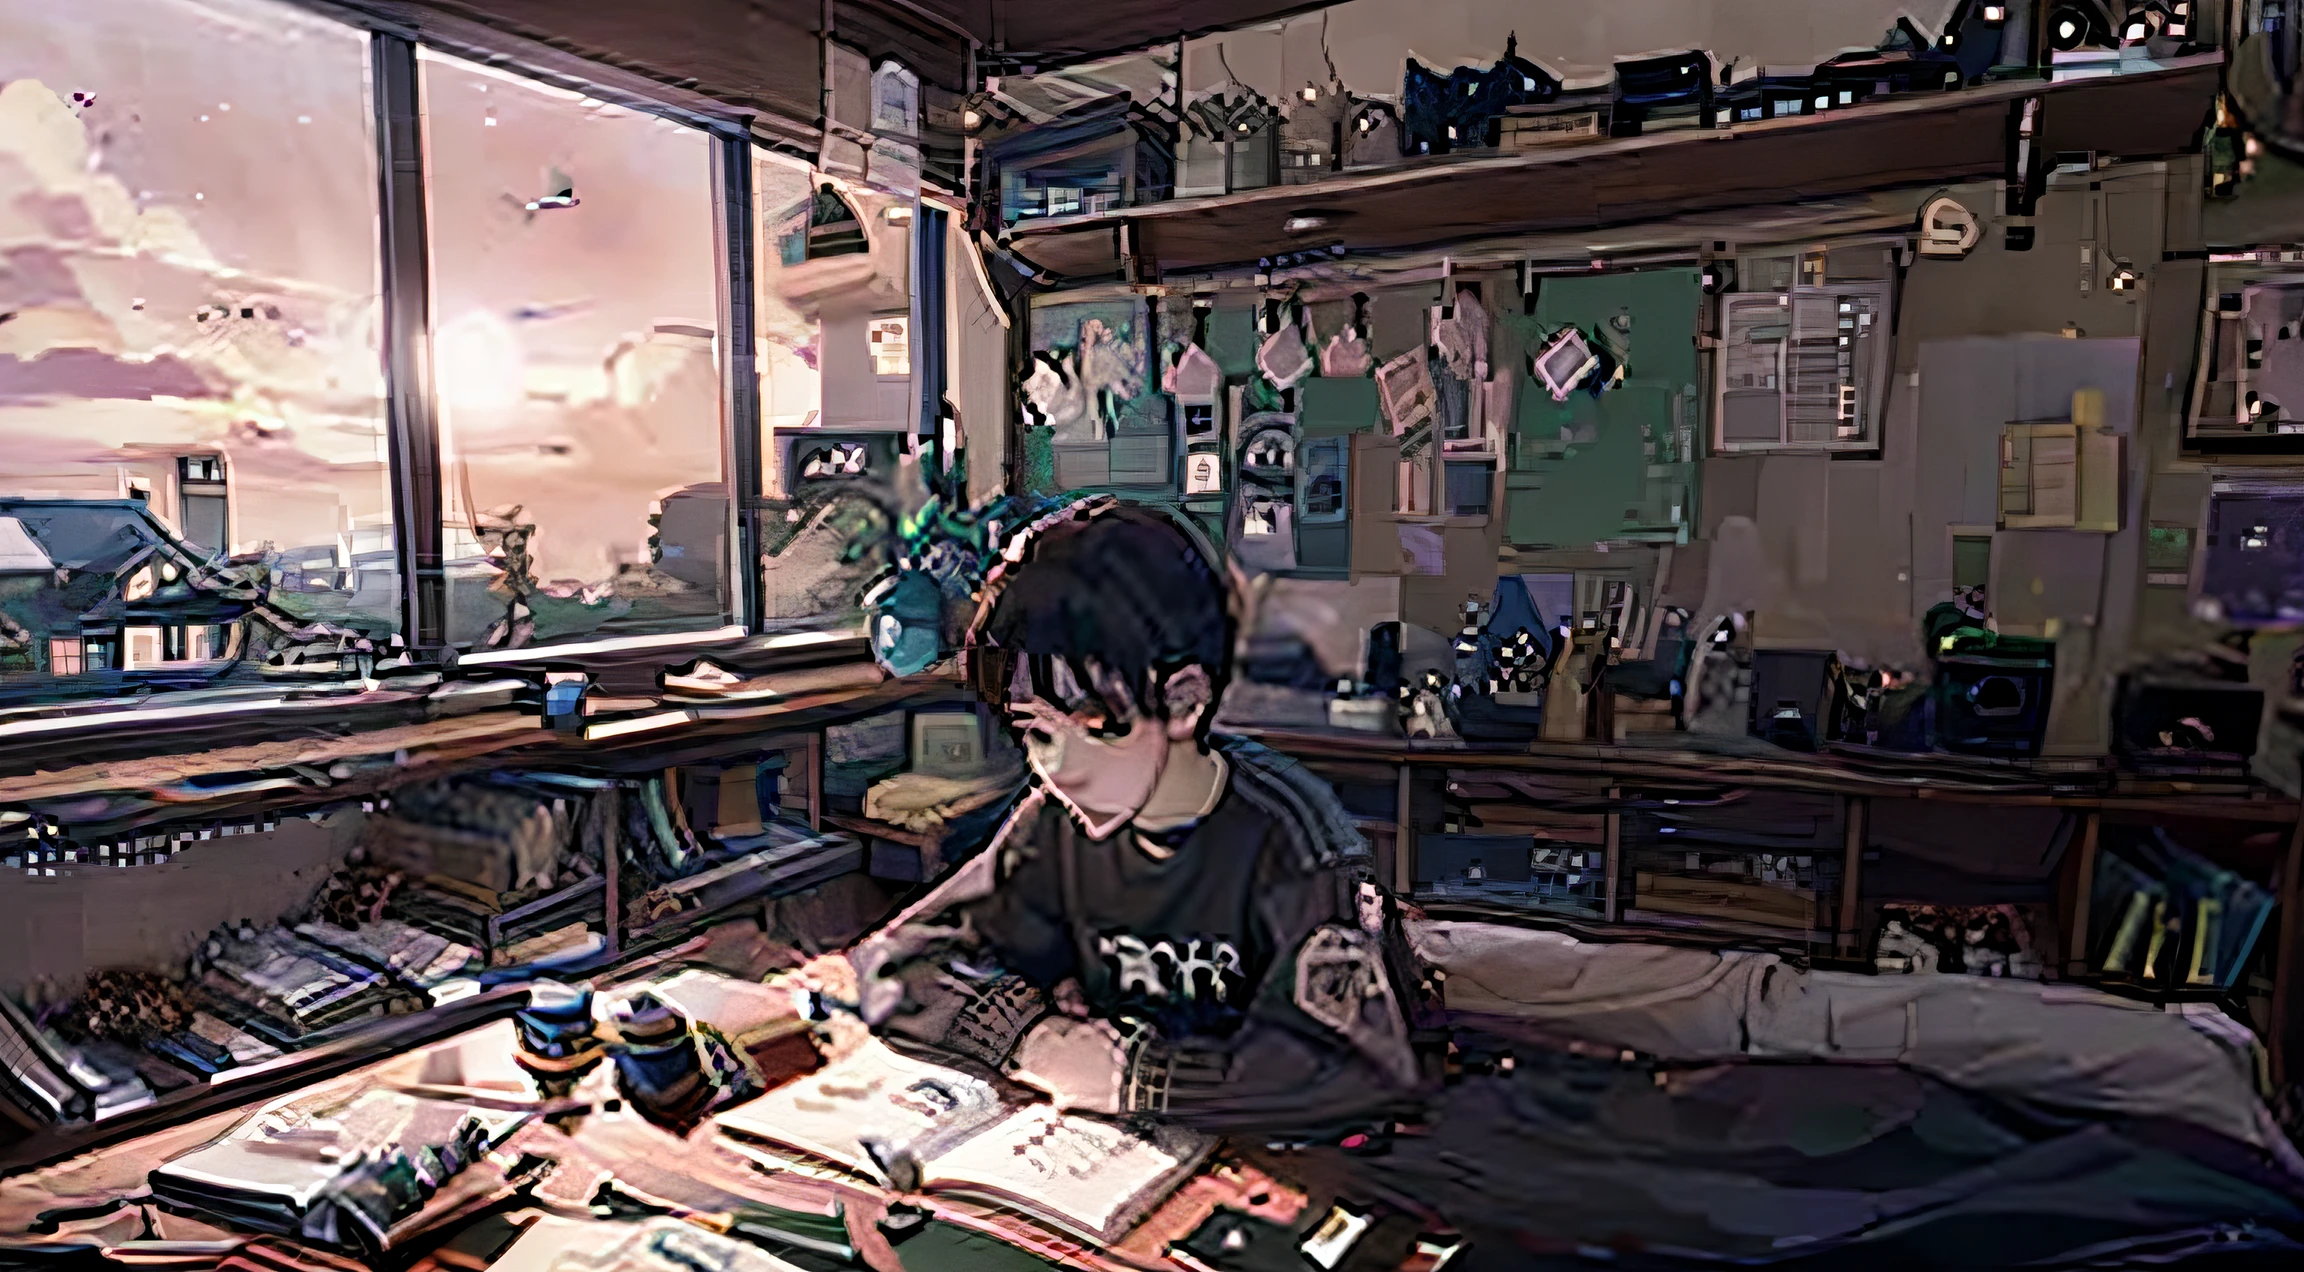 شاب يؤدي واجباته المدرسية في غرفته في فترة ما بعد الظهر الحزينة